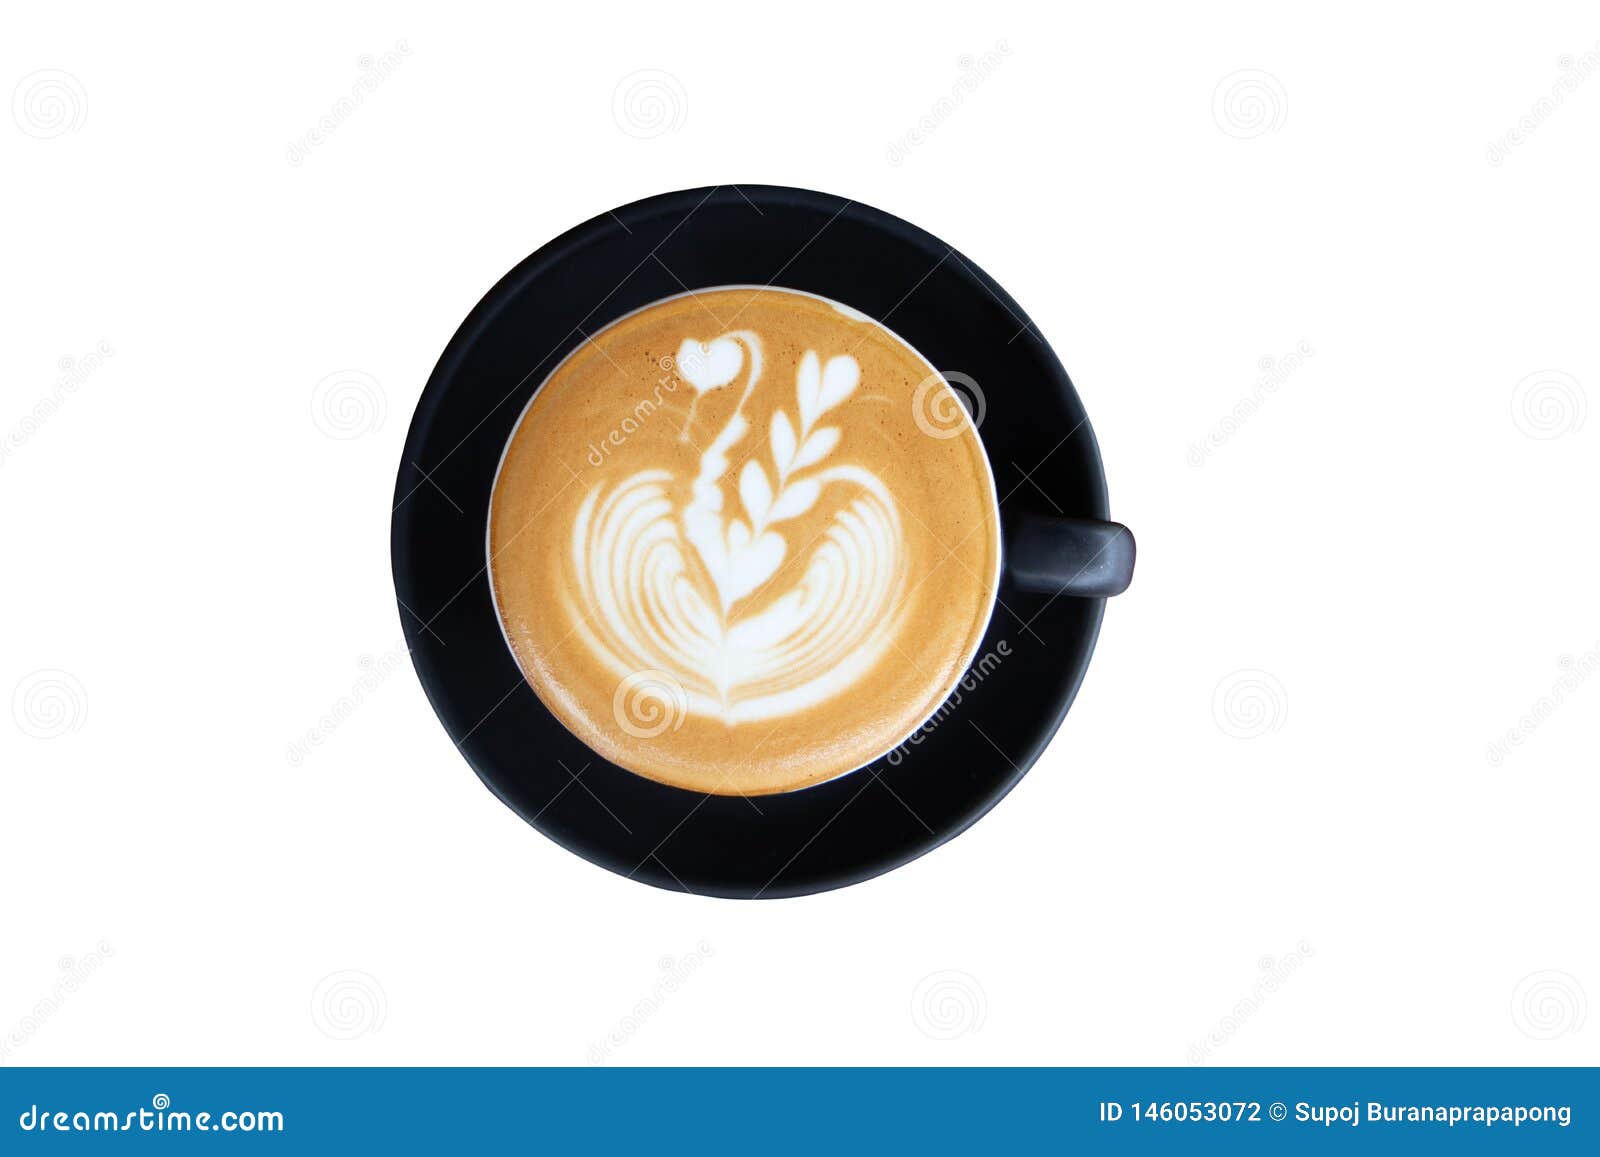 Nice Texture of Latte art on hot latte coffee . Milk foam in heart